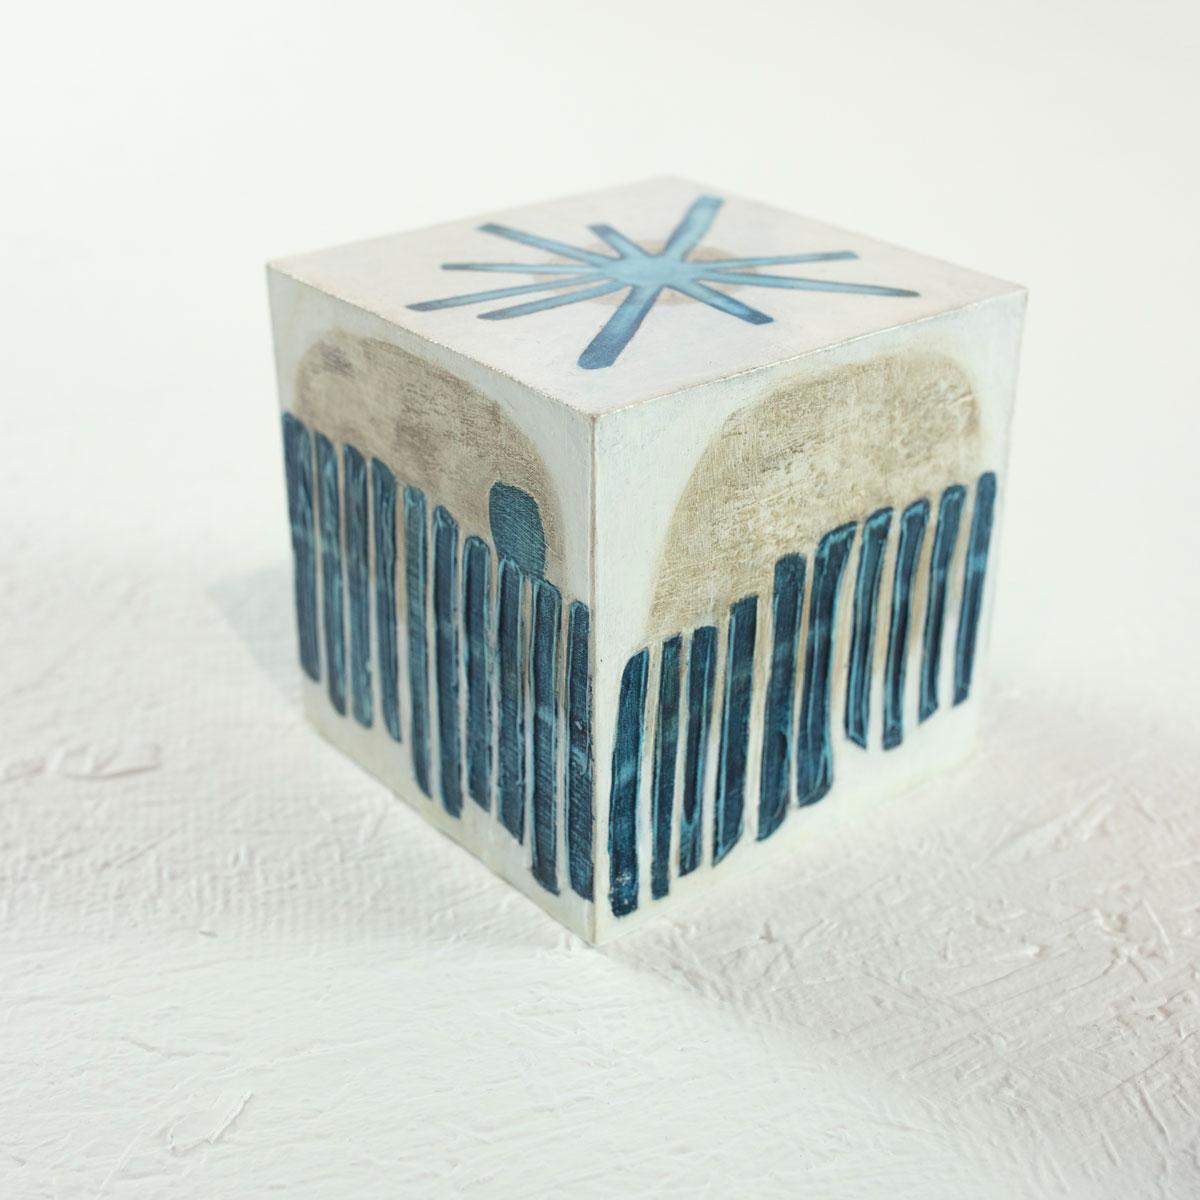 Ce cube sculptural de 4 pouces peint à la main par Sofie Swann est réalisé avec de la peinture acrylique et du gesso sur bois. Il présente une palette de bleu côtier, de beige et de blanc, avec des formes organiques et une légère texture à la